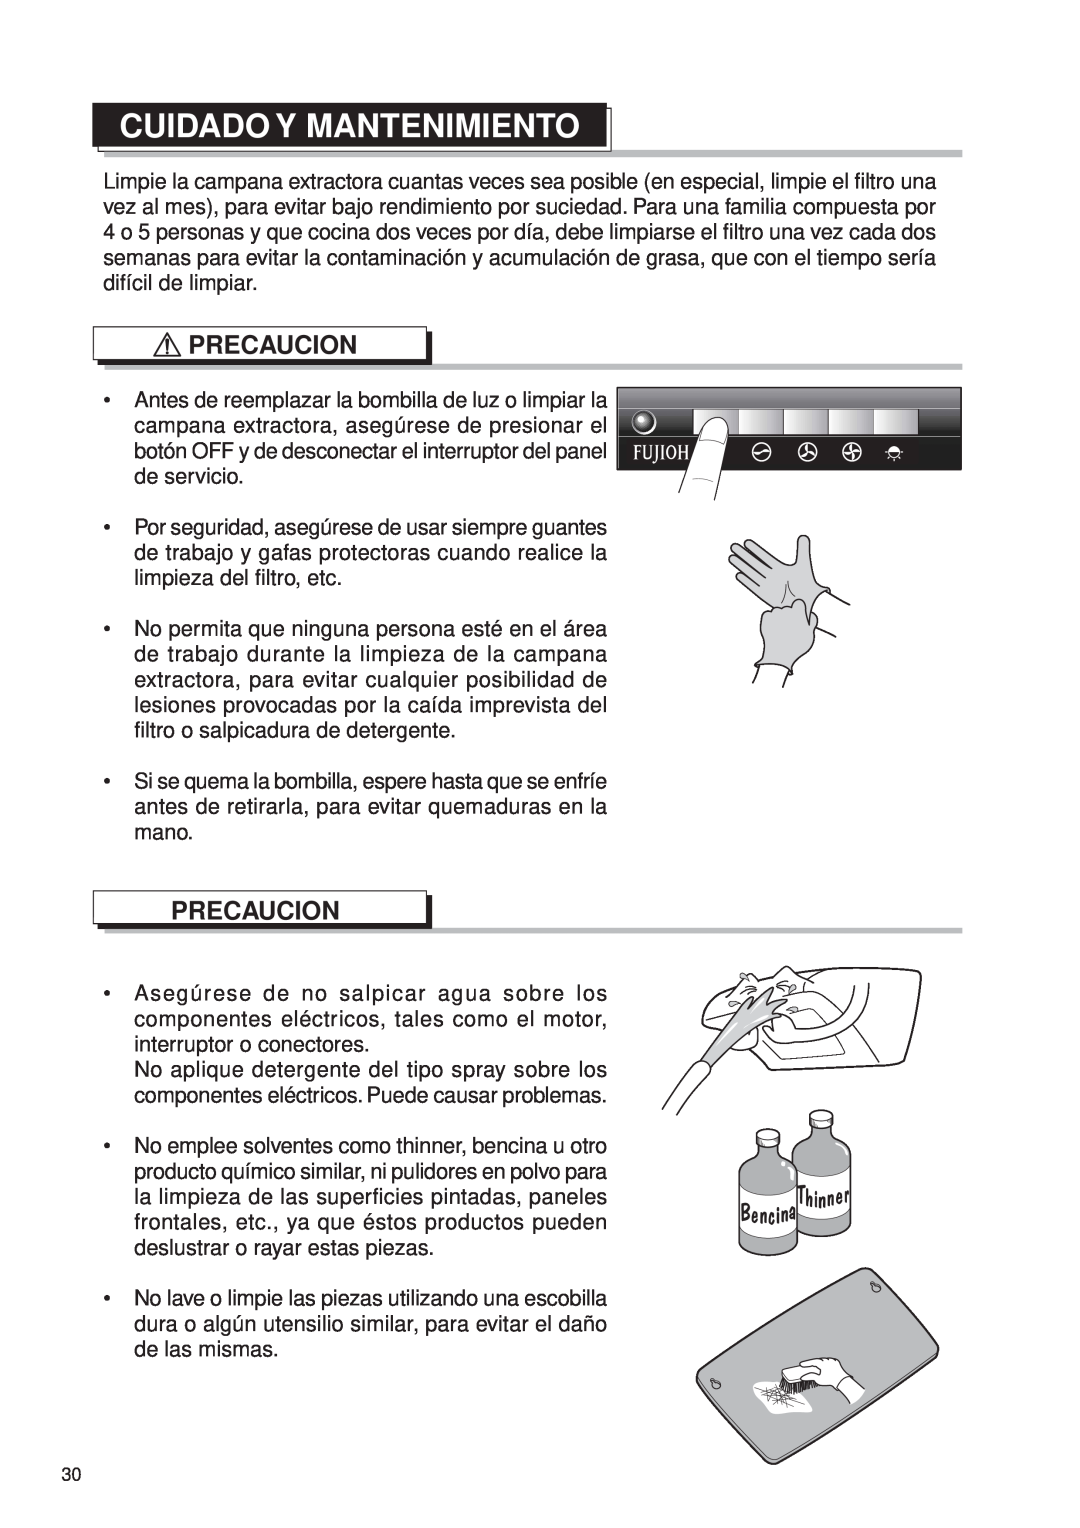 Fujioh FDR-4200D operation manual Cuidado Y Mantenimiento, Precaucion 